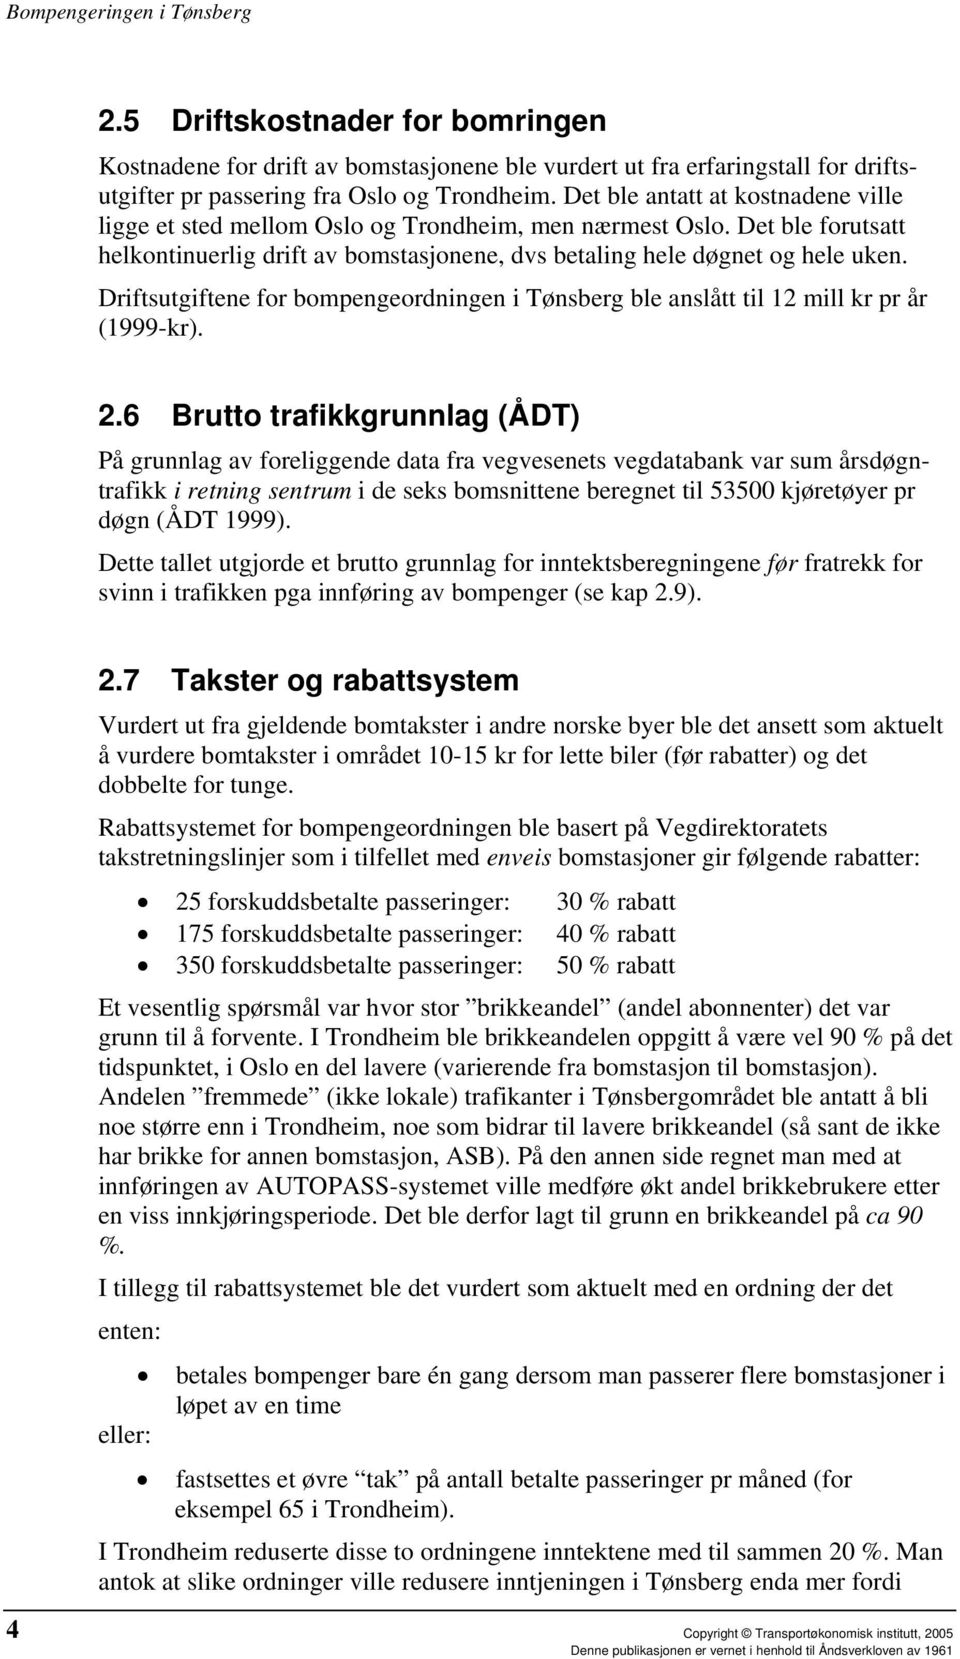 Driftsutgiftene for bompengeordningen i Tønsberg ble anslått til 12 mill kr pr år (1999-kr). 2.